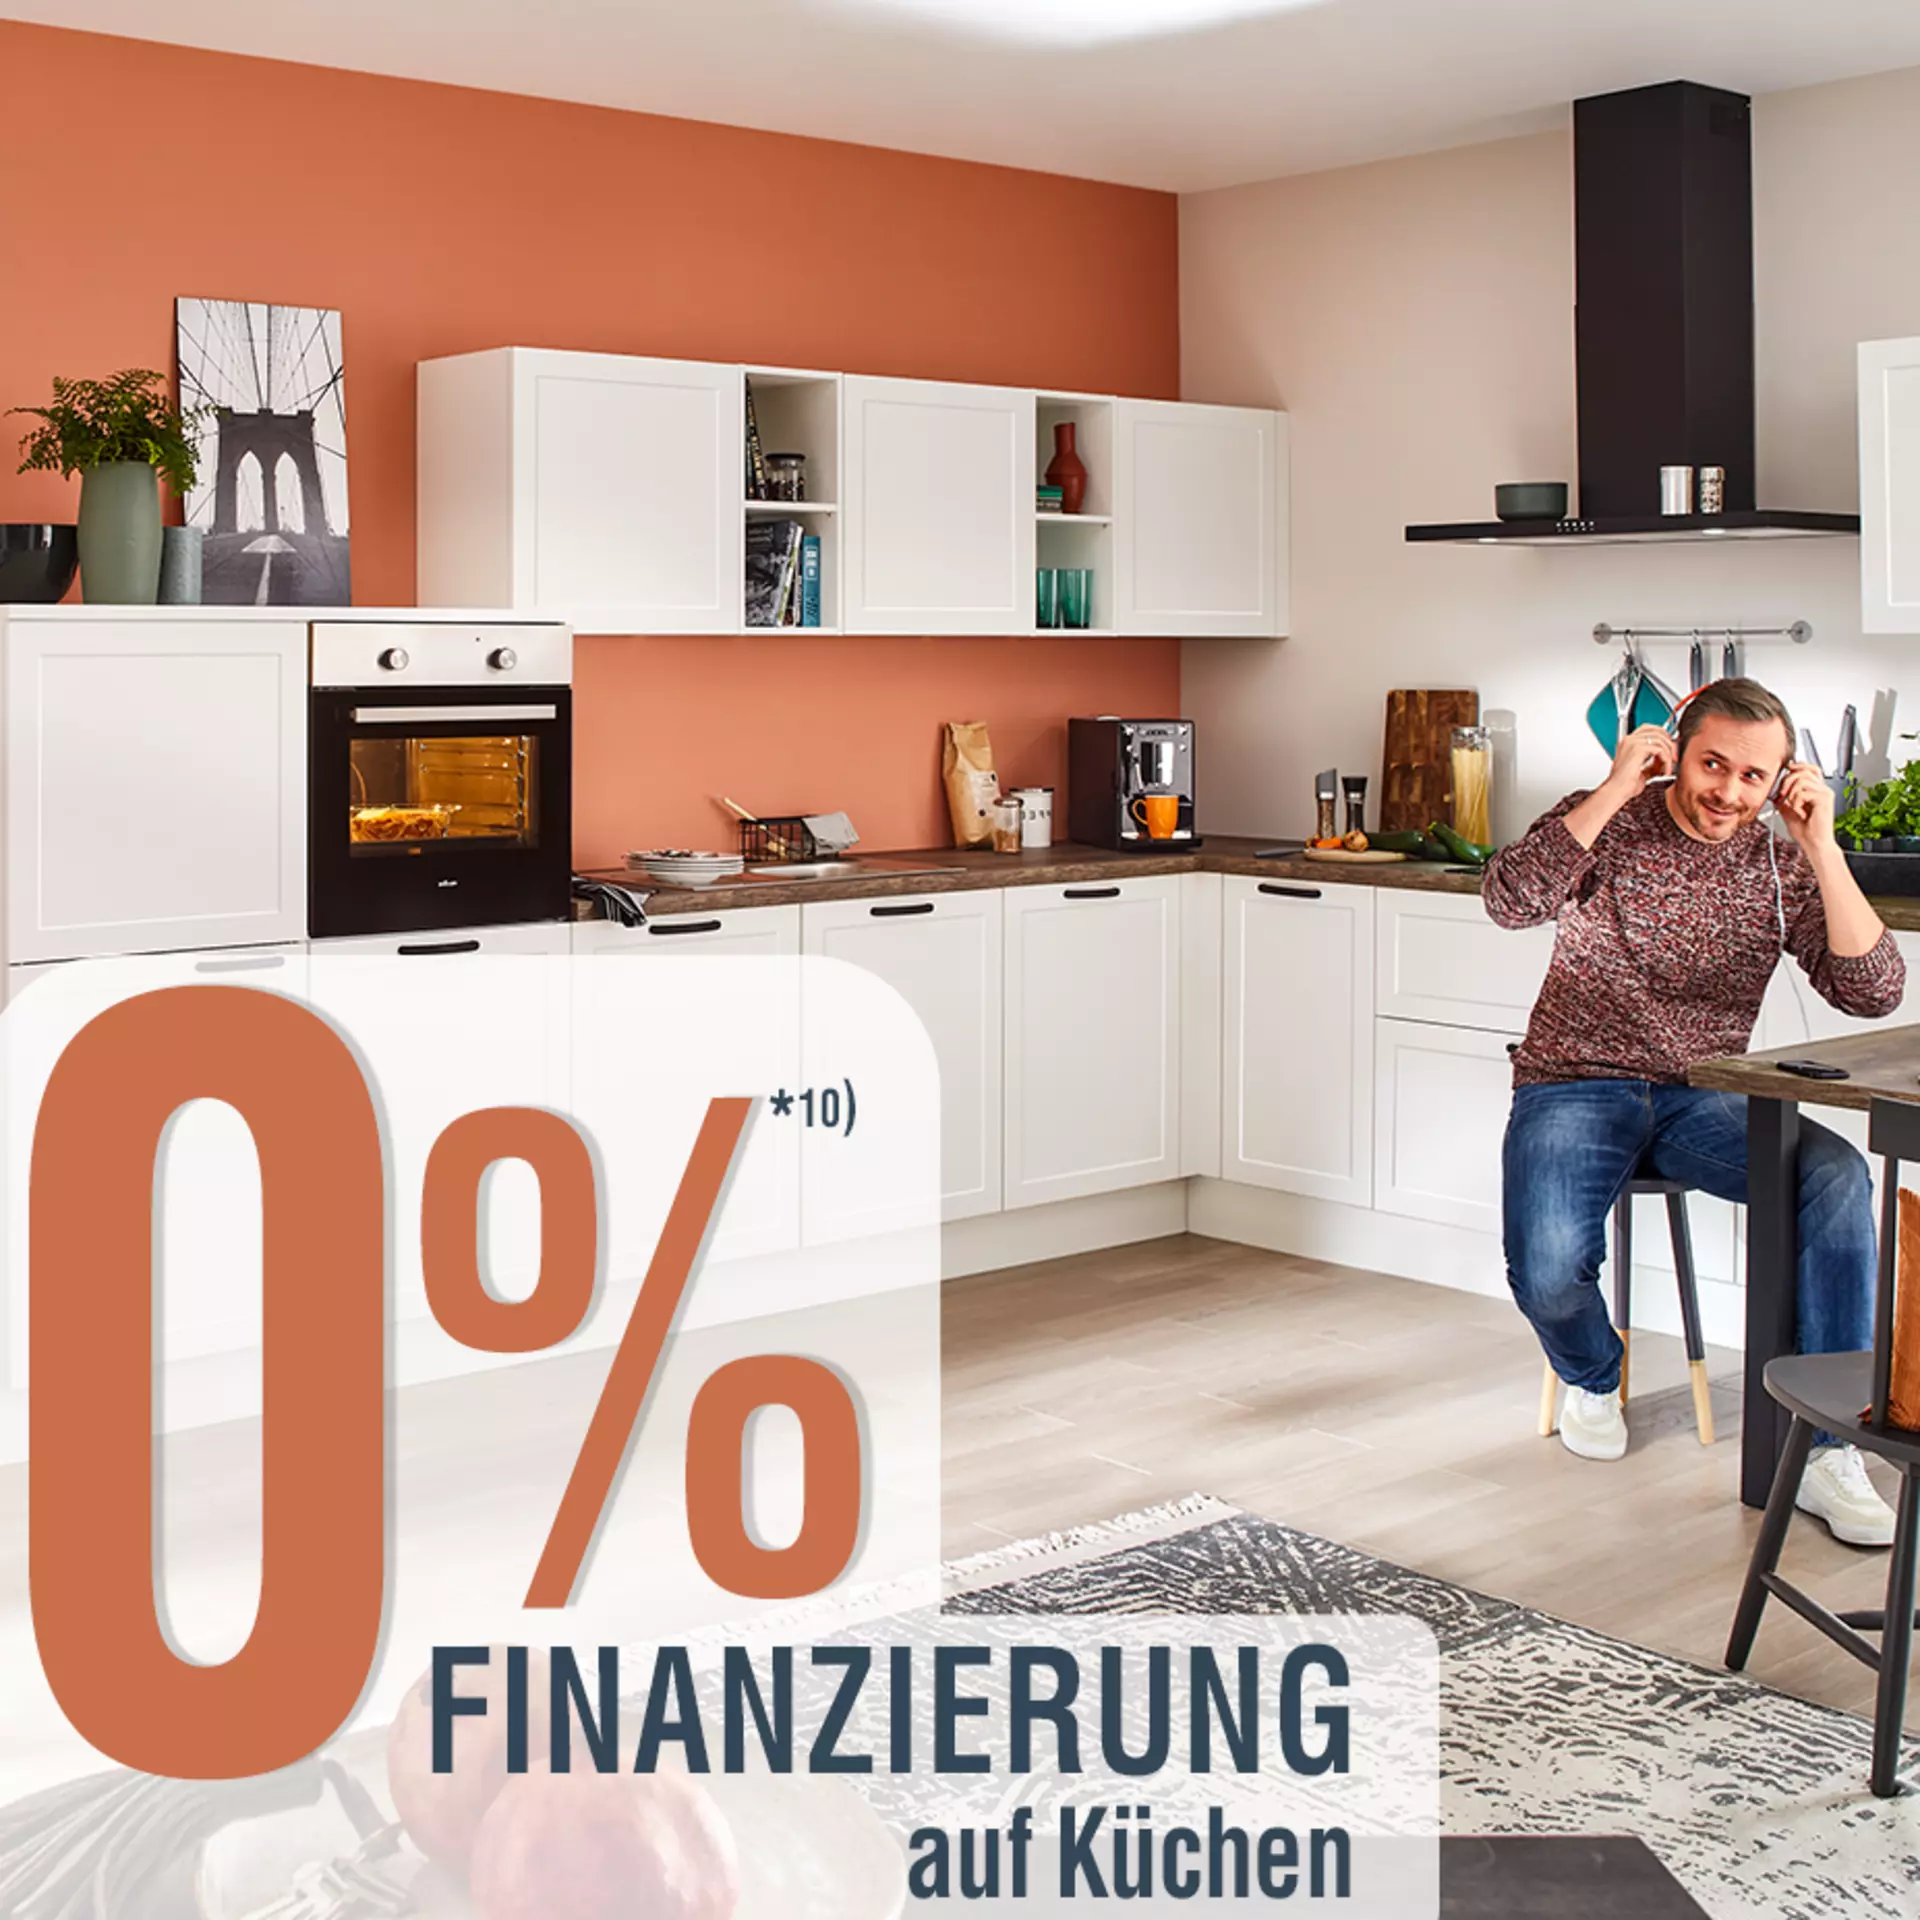 0% Finanzierung auf Küchen bei Möbel Inhofer